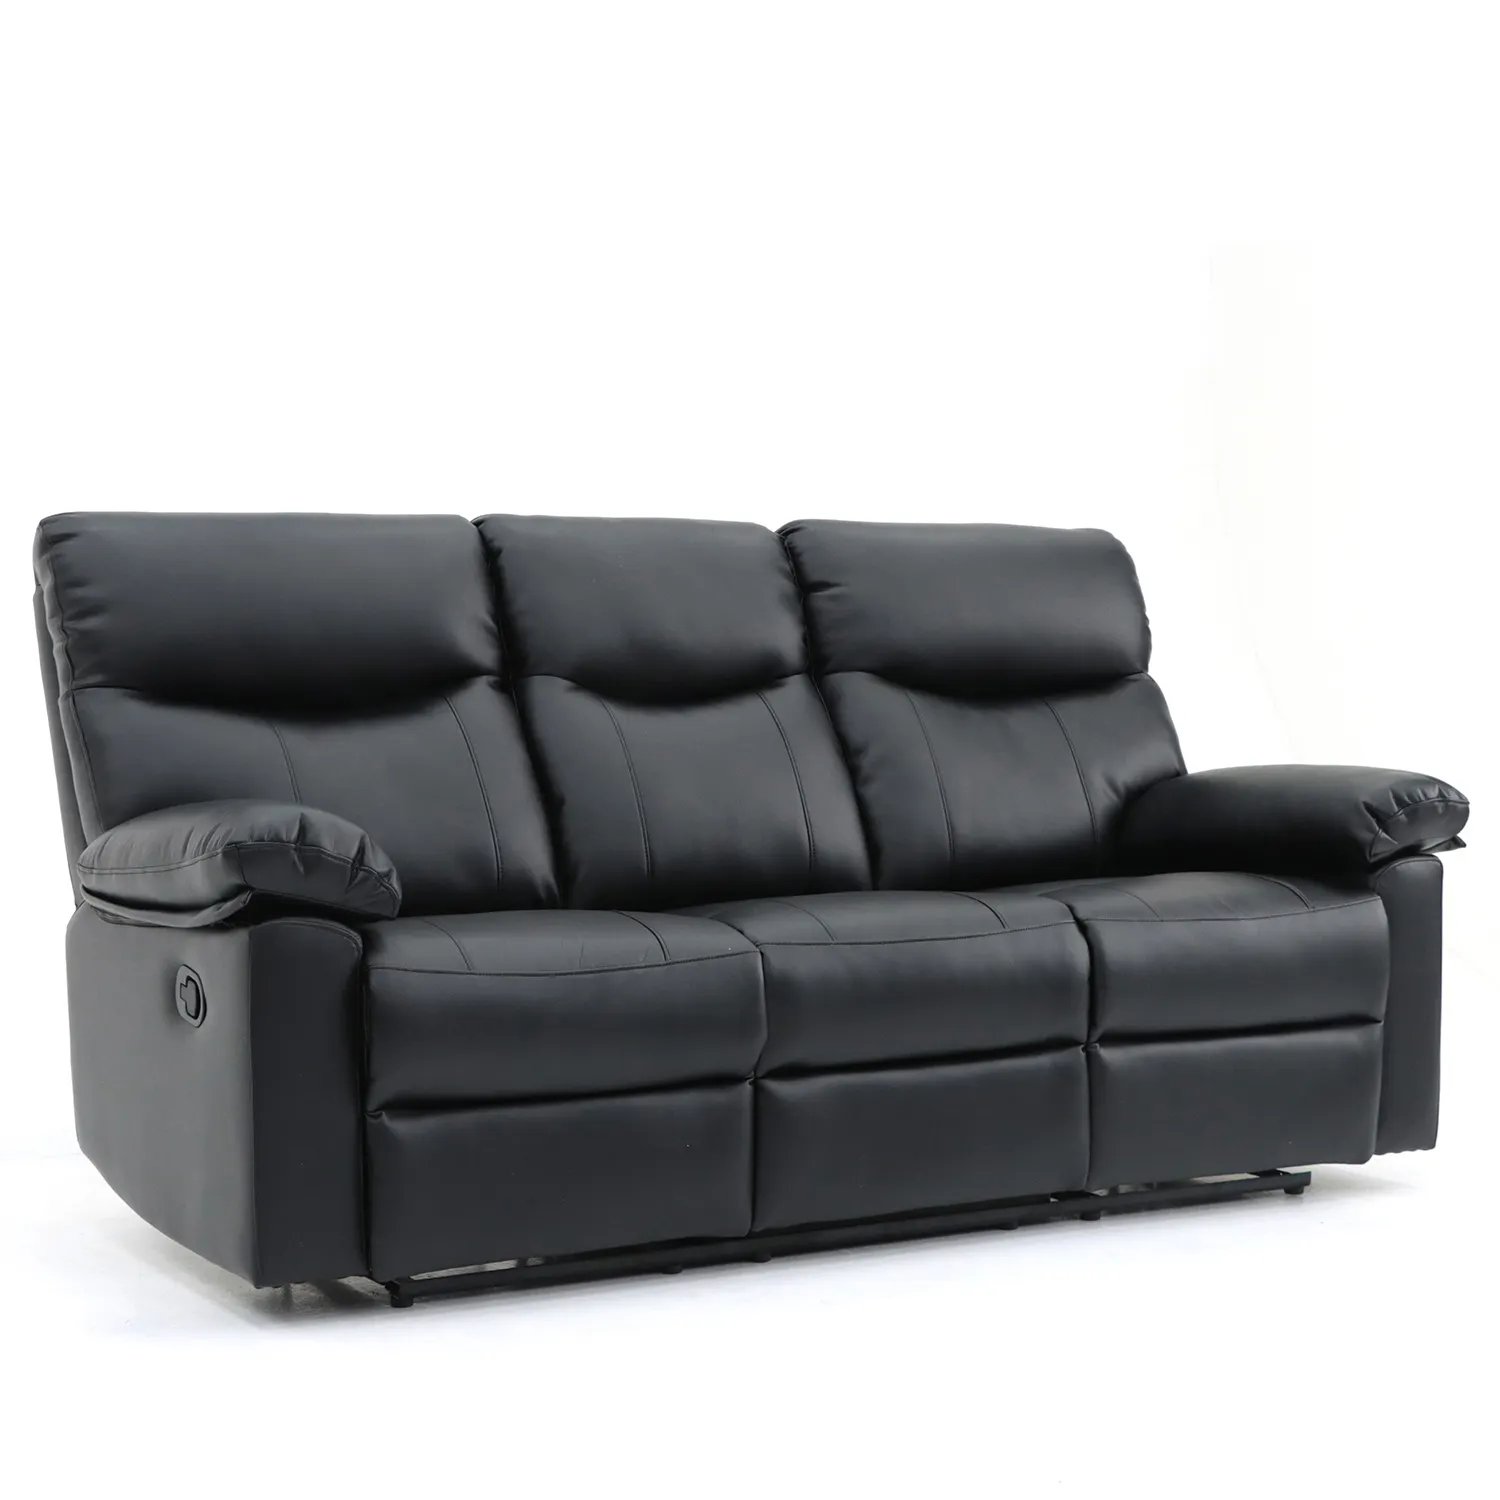 Geekfurniture mobilya lüks Recliner koltuk takımı kumaş Modern 3 + 2 kişilik oturma odası kanepe çıkarılabilir kol dayama ile